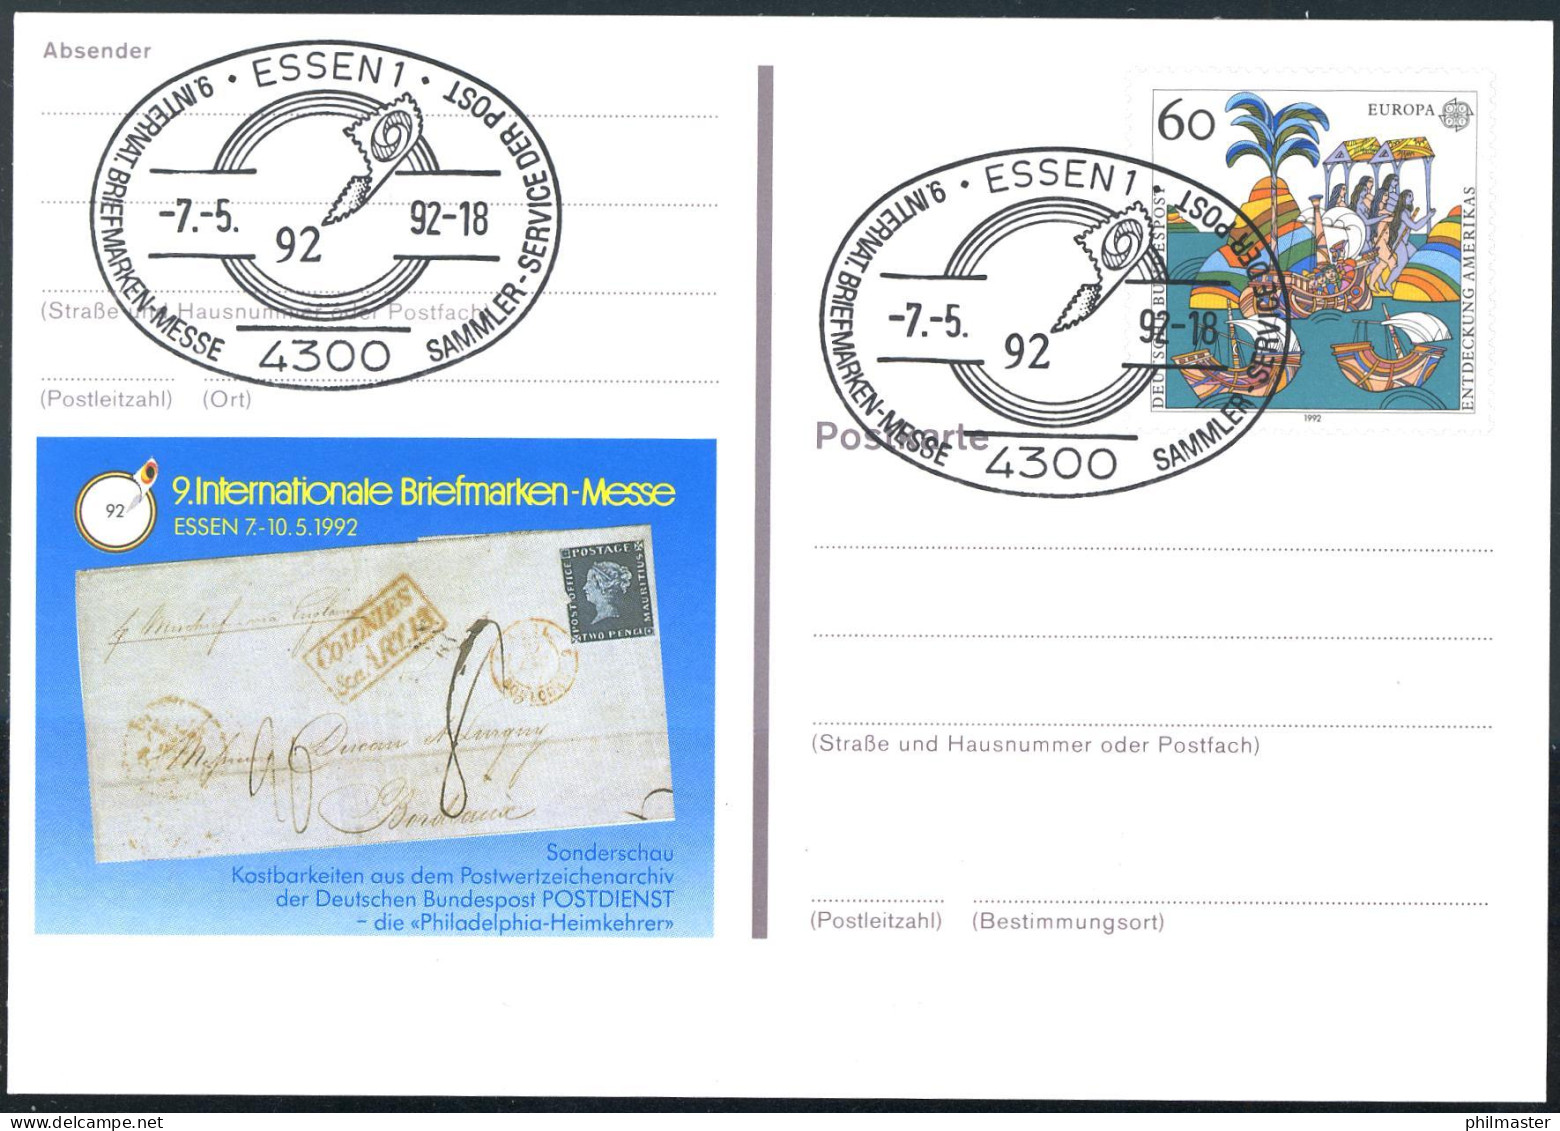 PSo 27 ESSEN 1992, ESSt Messe-Symbol 07.05.1992 - Postkarten - Ungebraucht